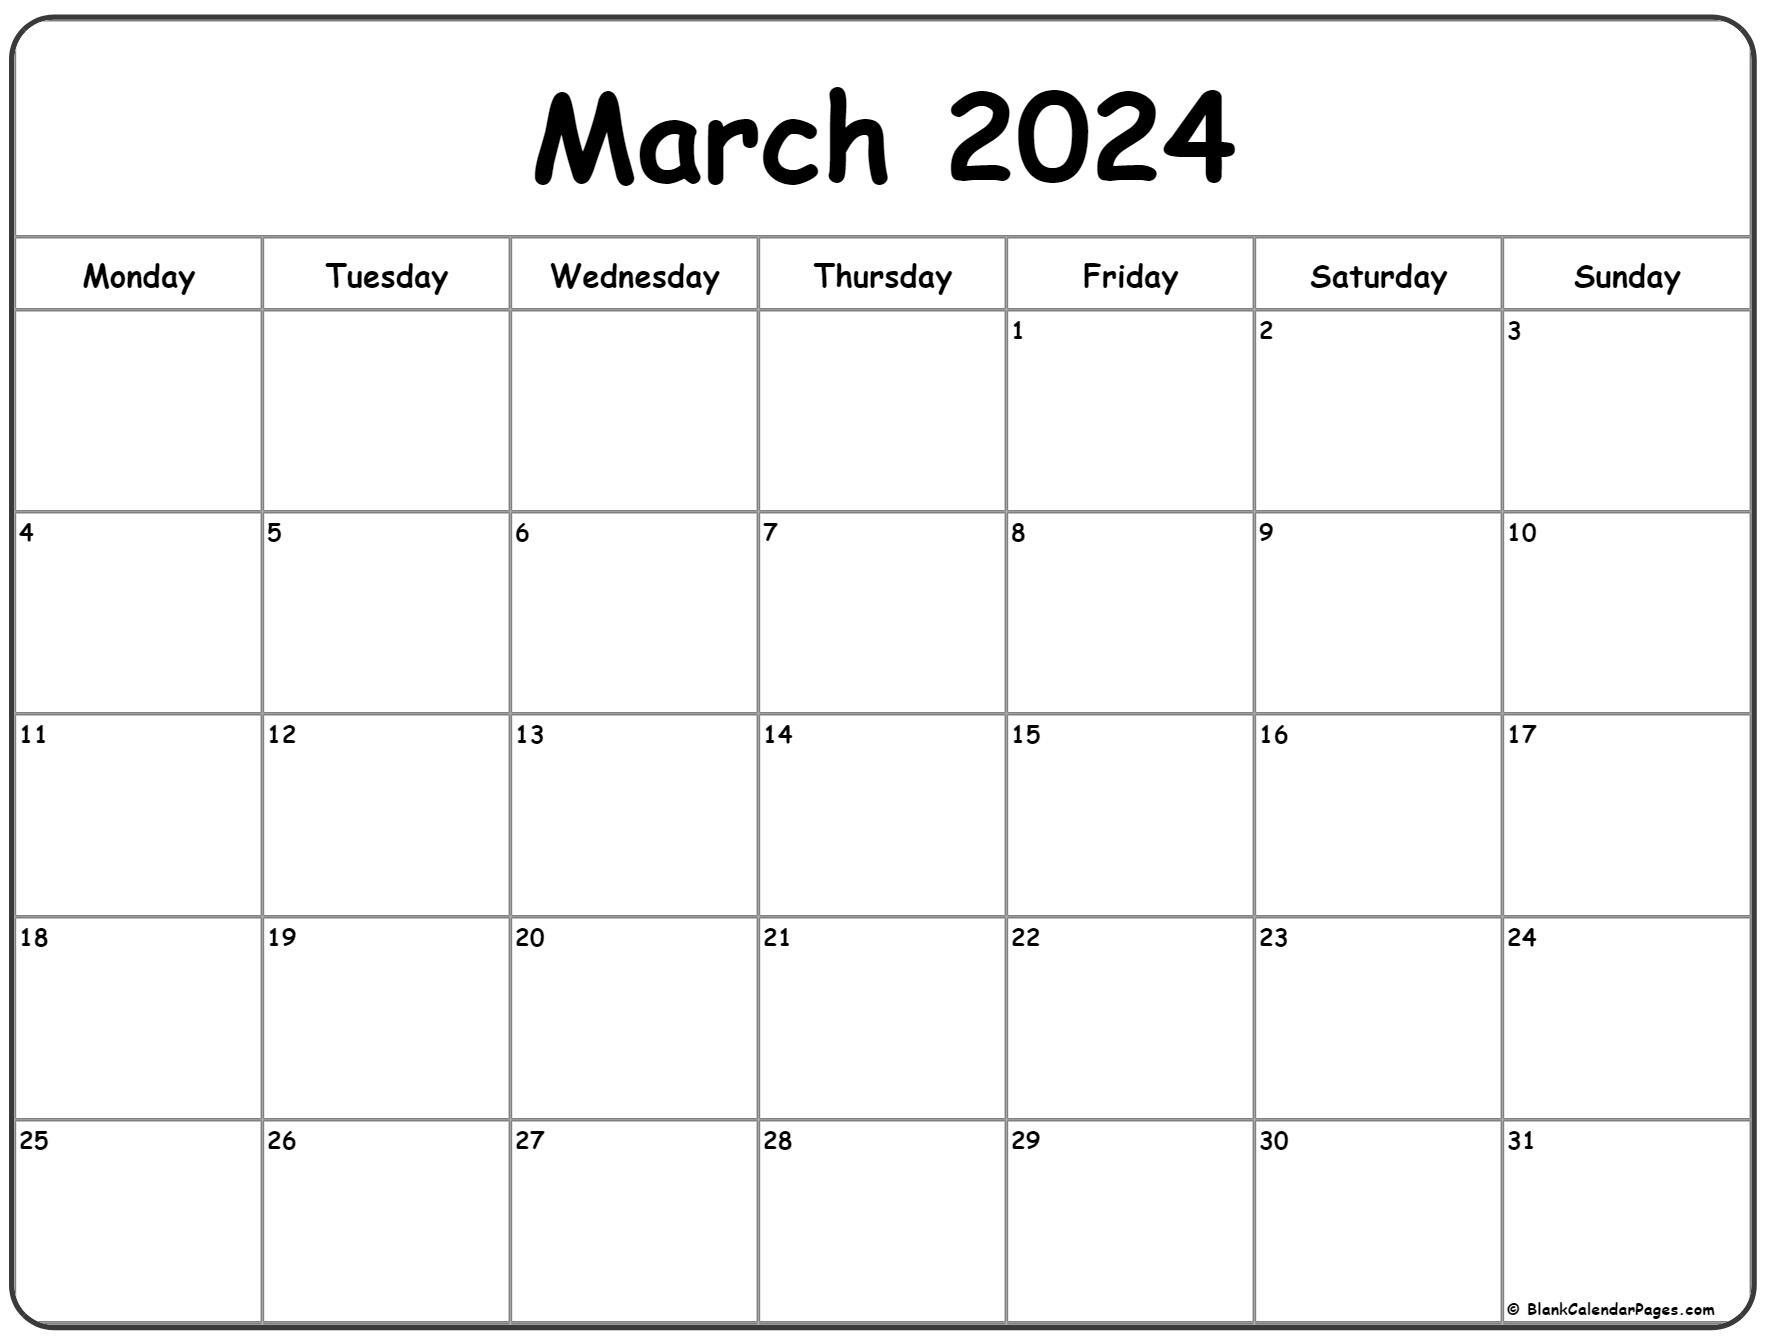 March 2024 Monday Calendar | Monday To Sunday for Printable Calendar Mar 2024